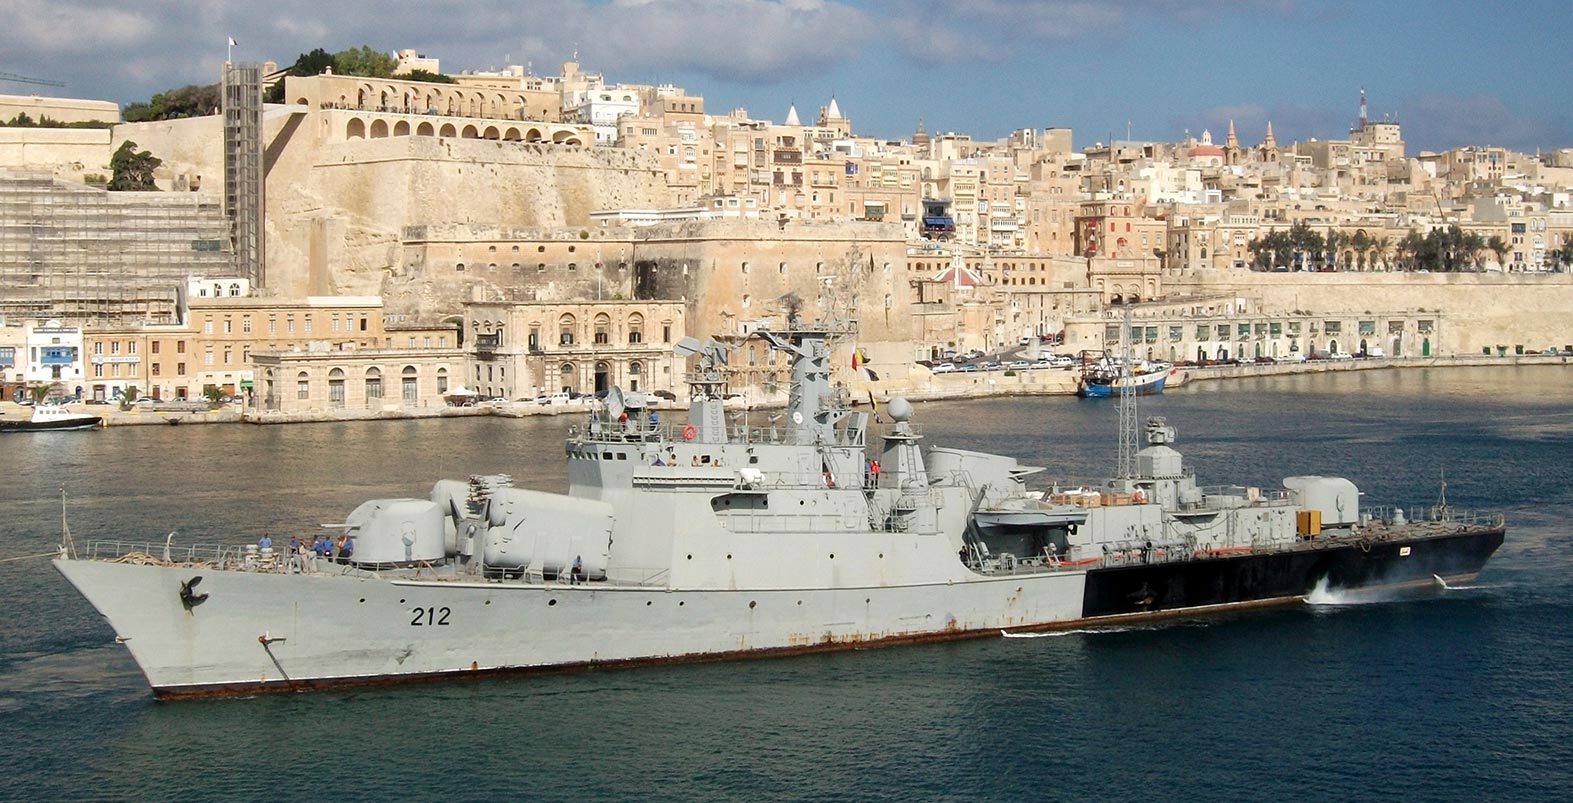 212 Al Hani 28 октября 2013 на Мальте